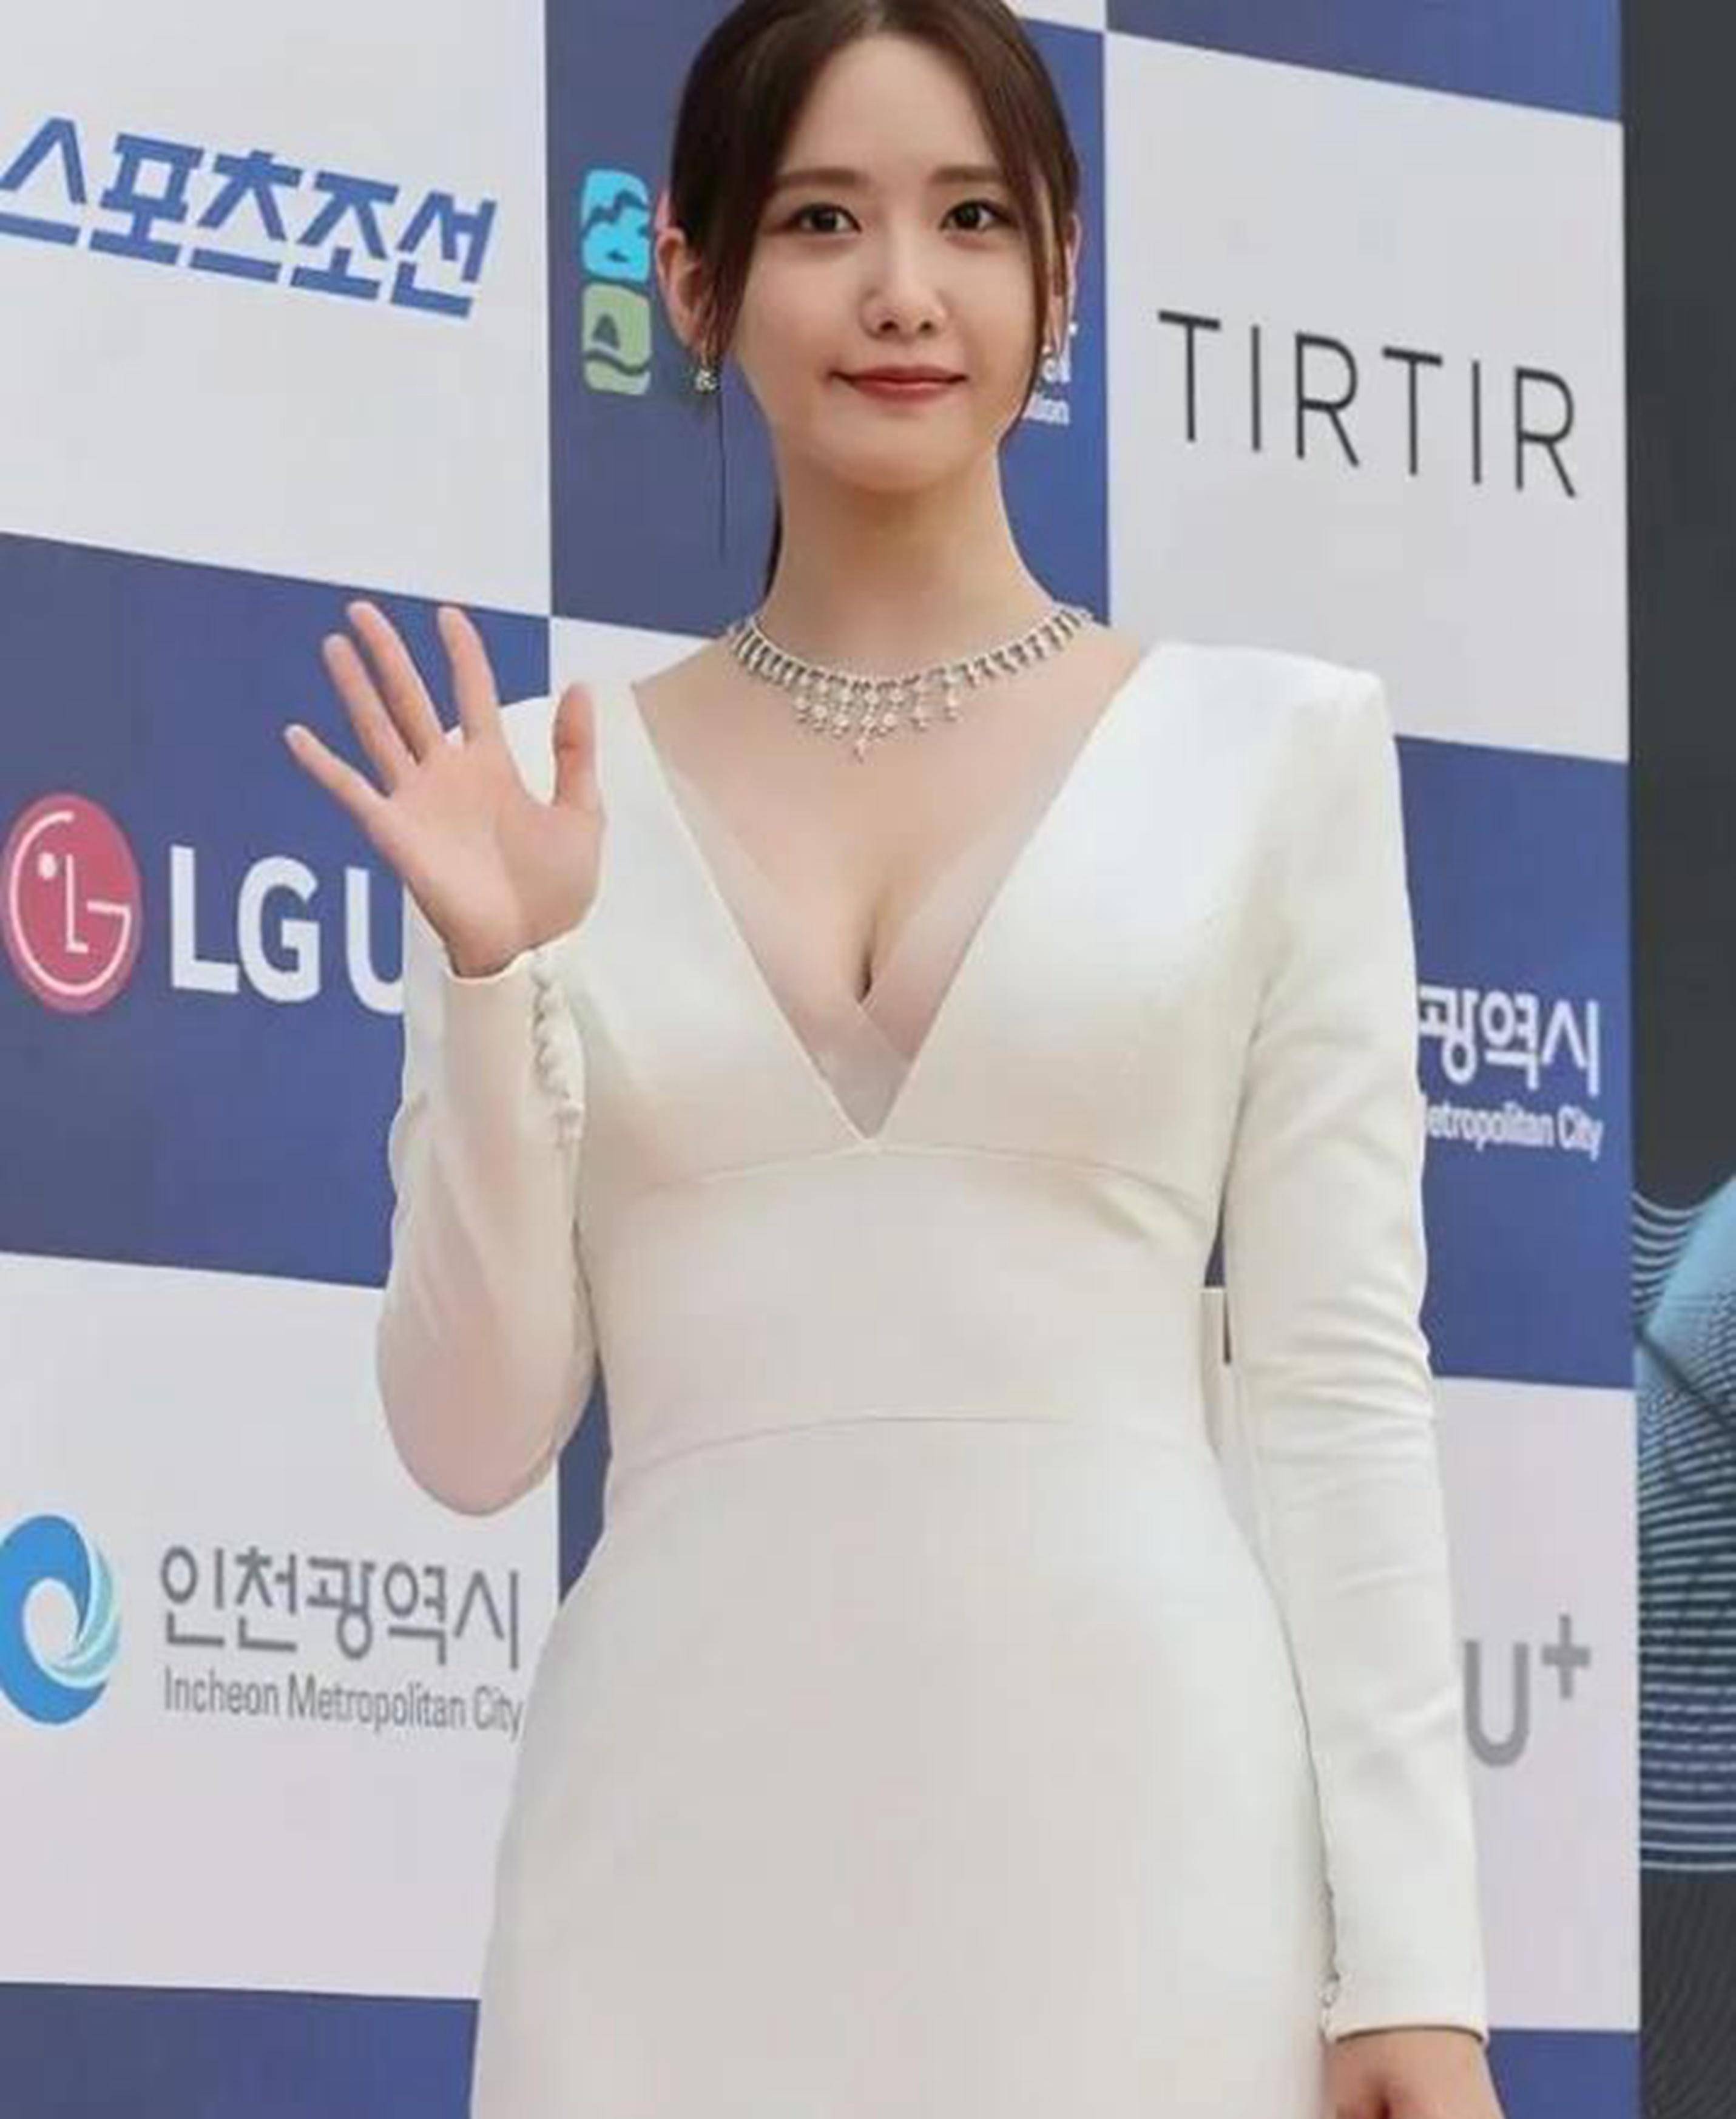 韩女星林允儿,身穿白色深v礼服裙出席活动,简约优雅,清纯可人